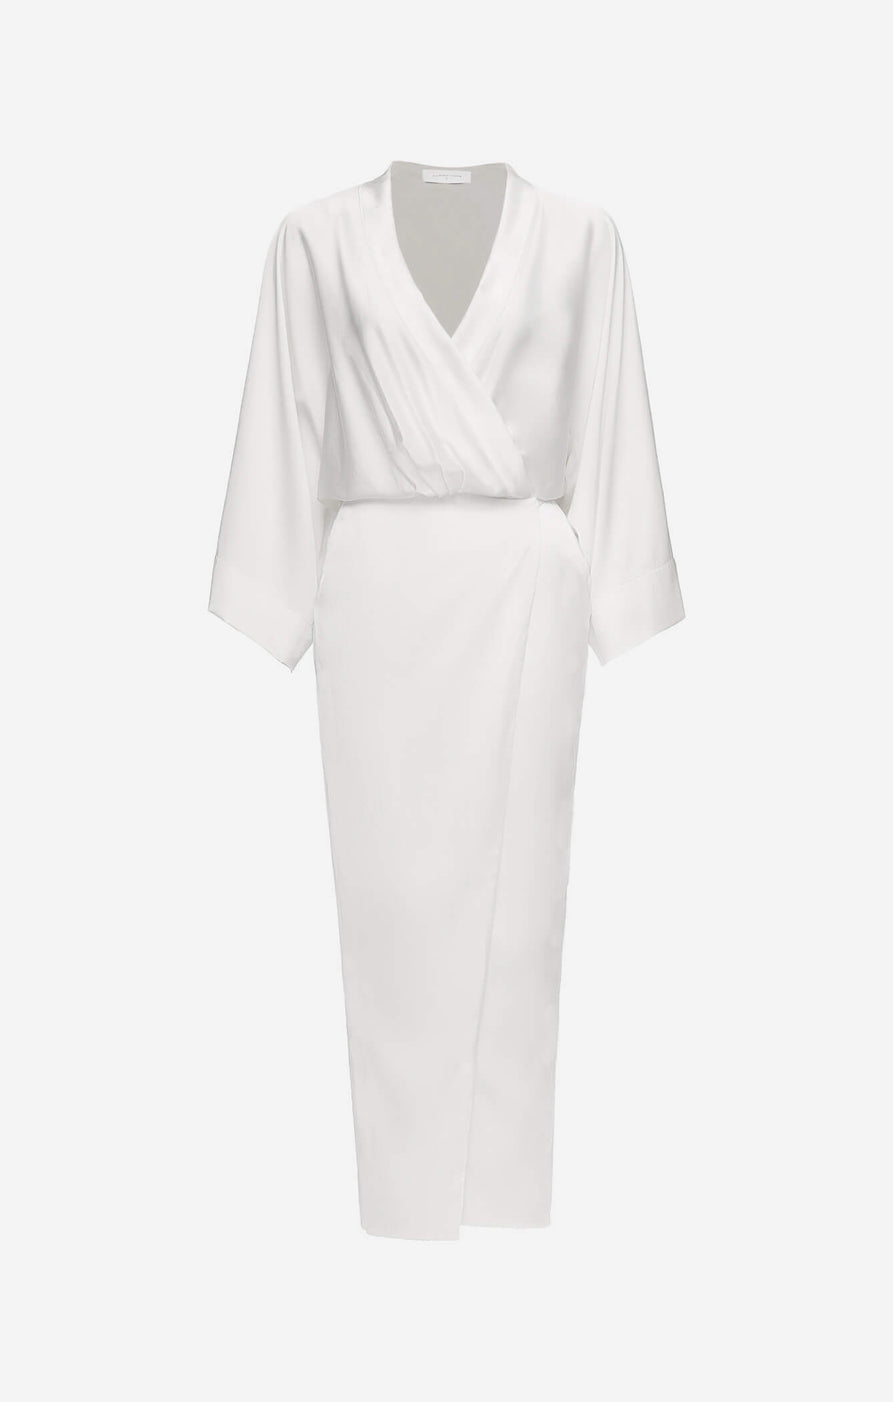 THE SILK KIMONO MAXI DRESS - WHITE